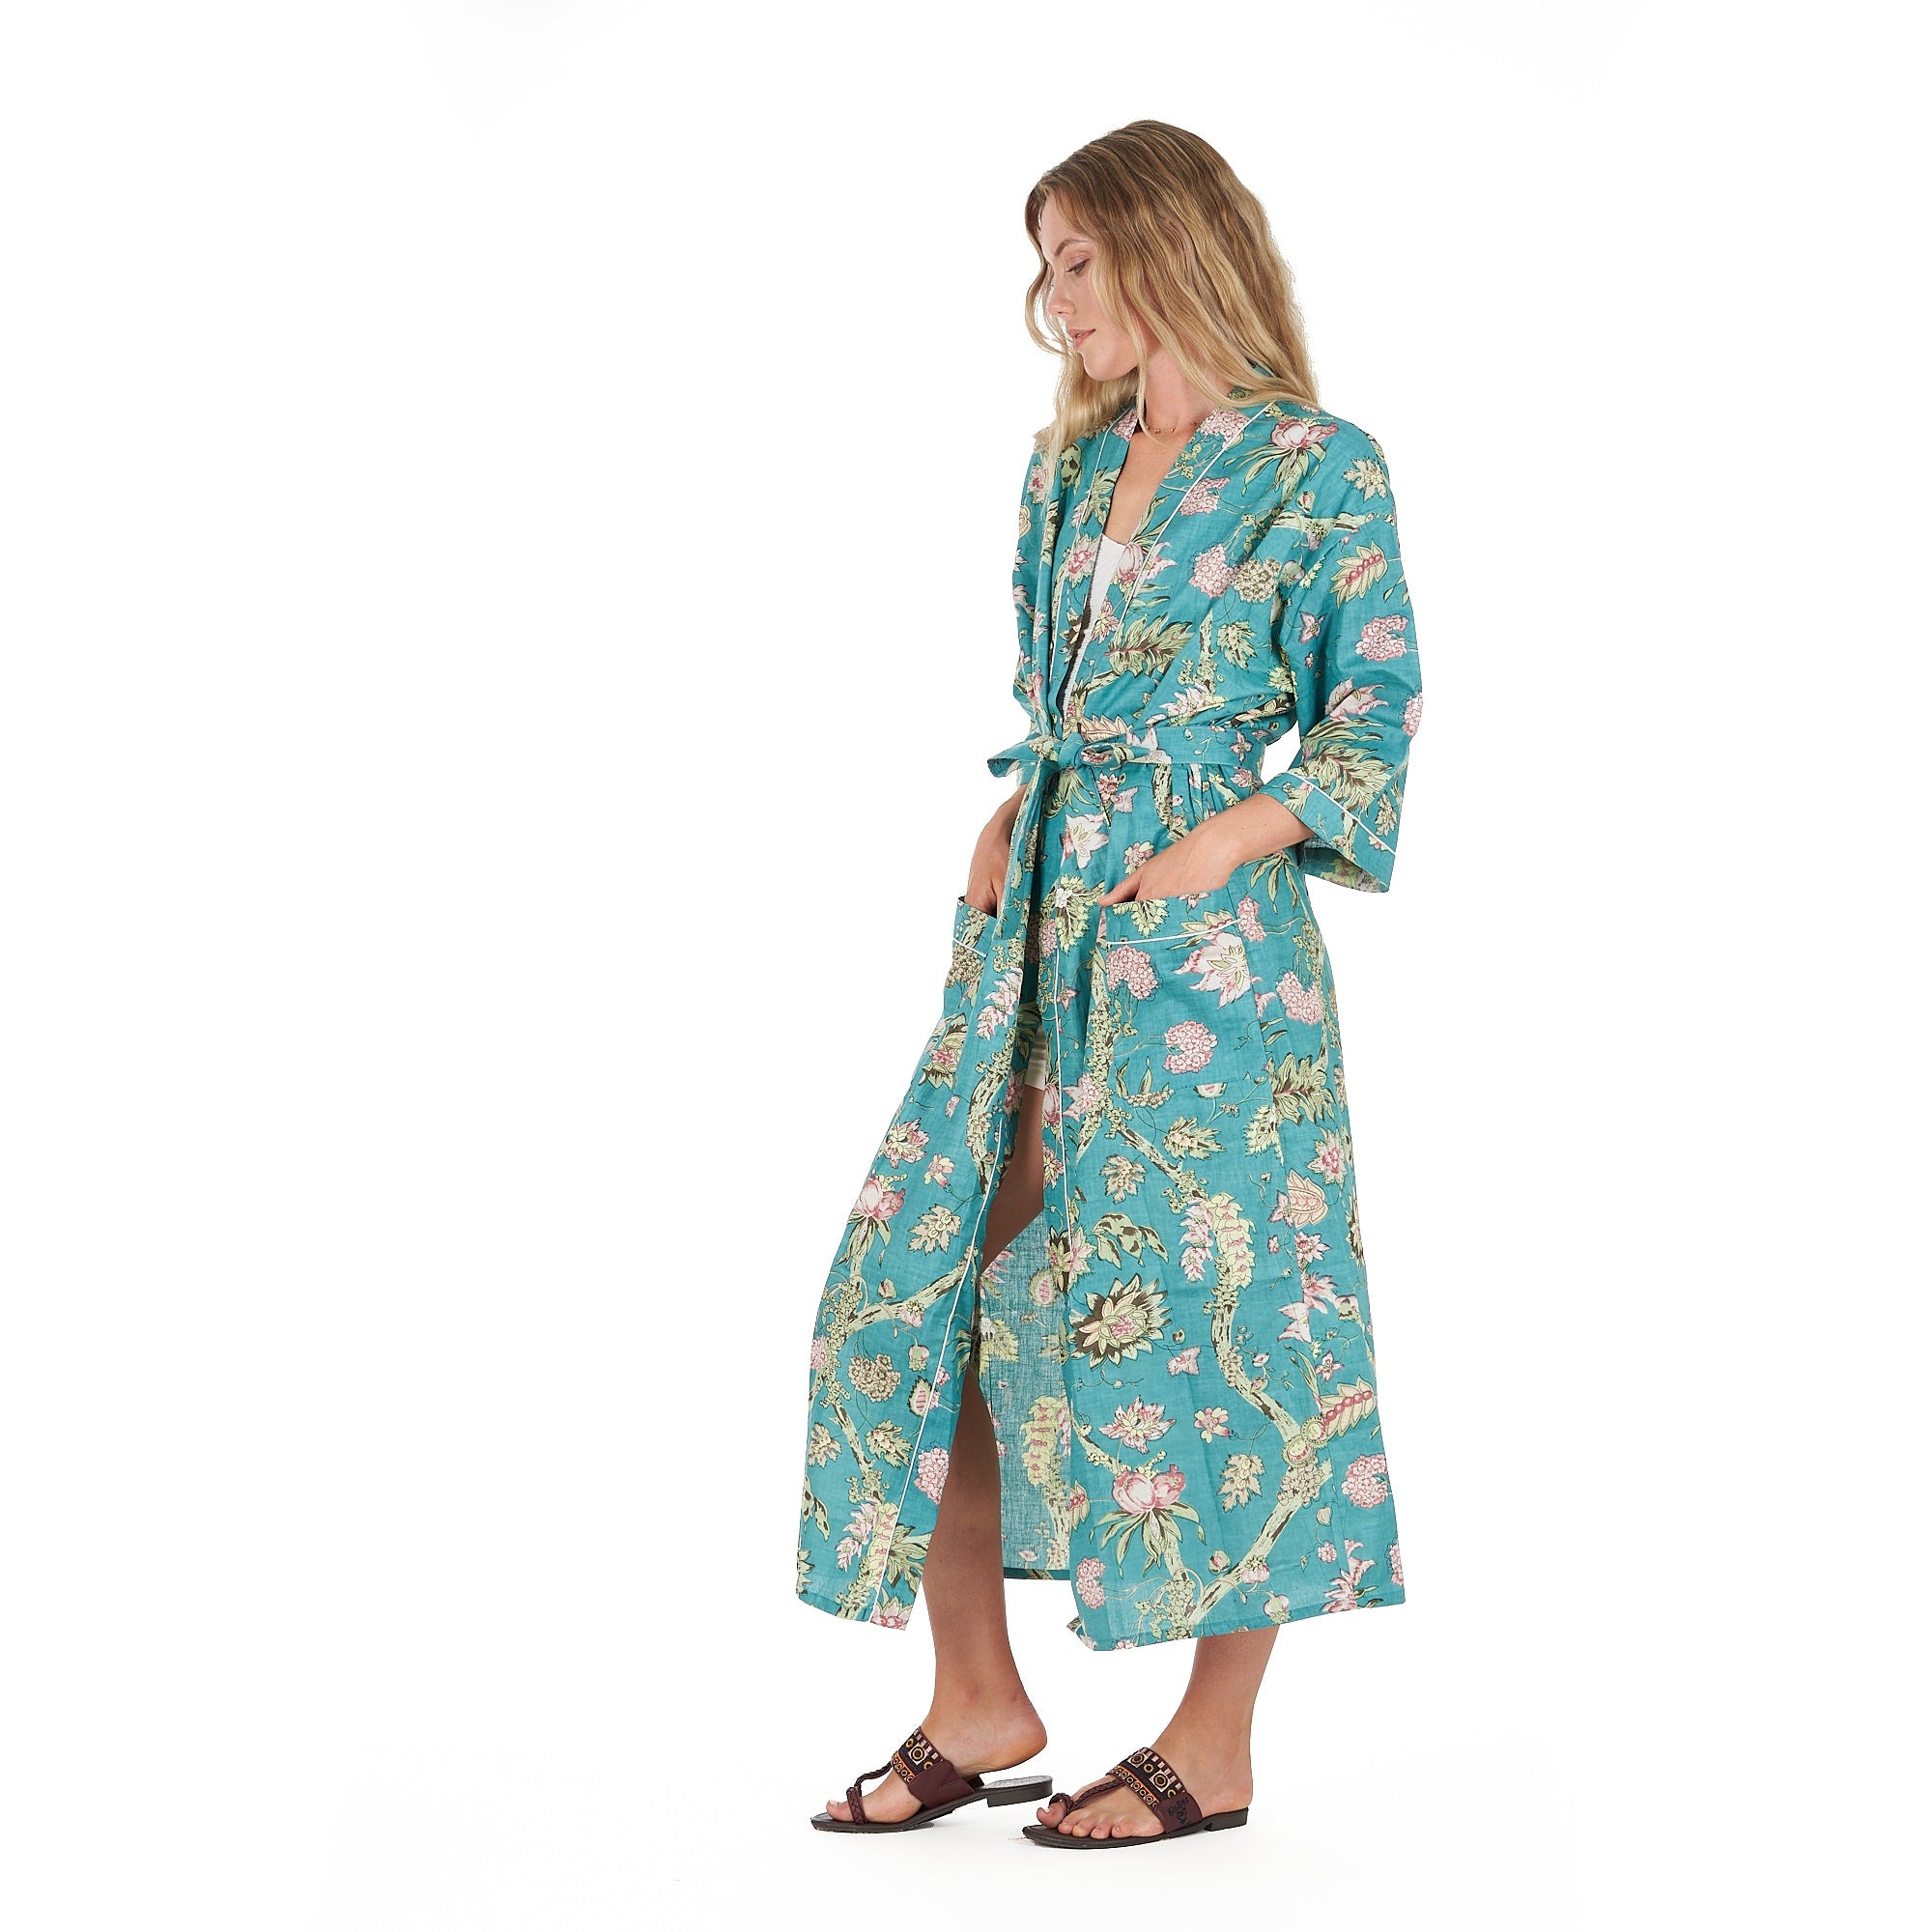 'Coastal Cool' 100% Cotton Kimono Robe